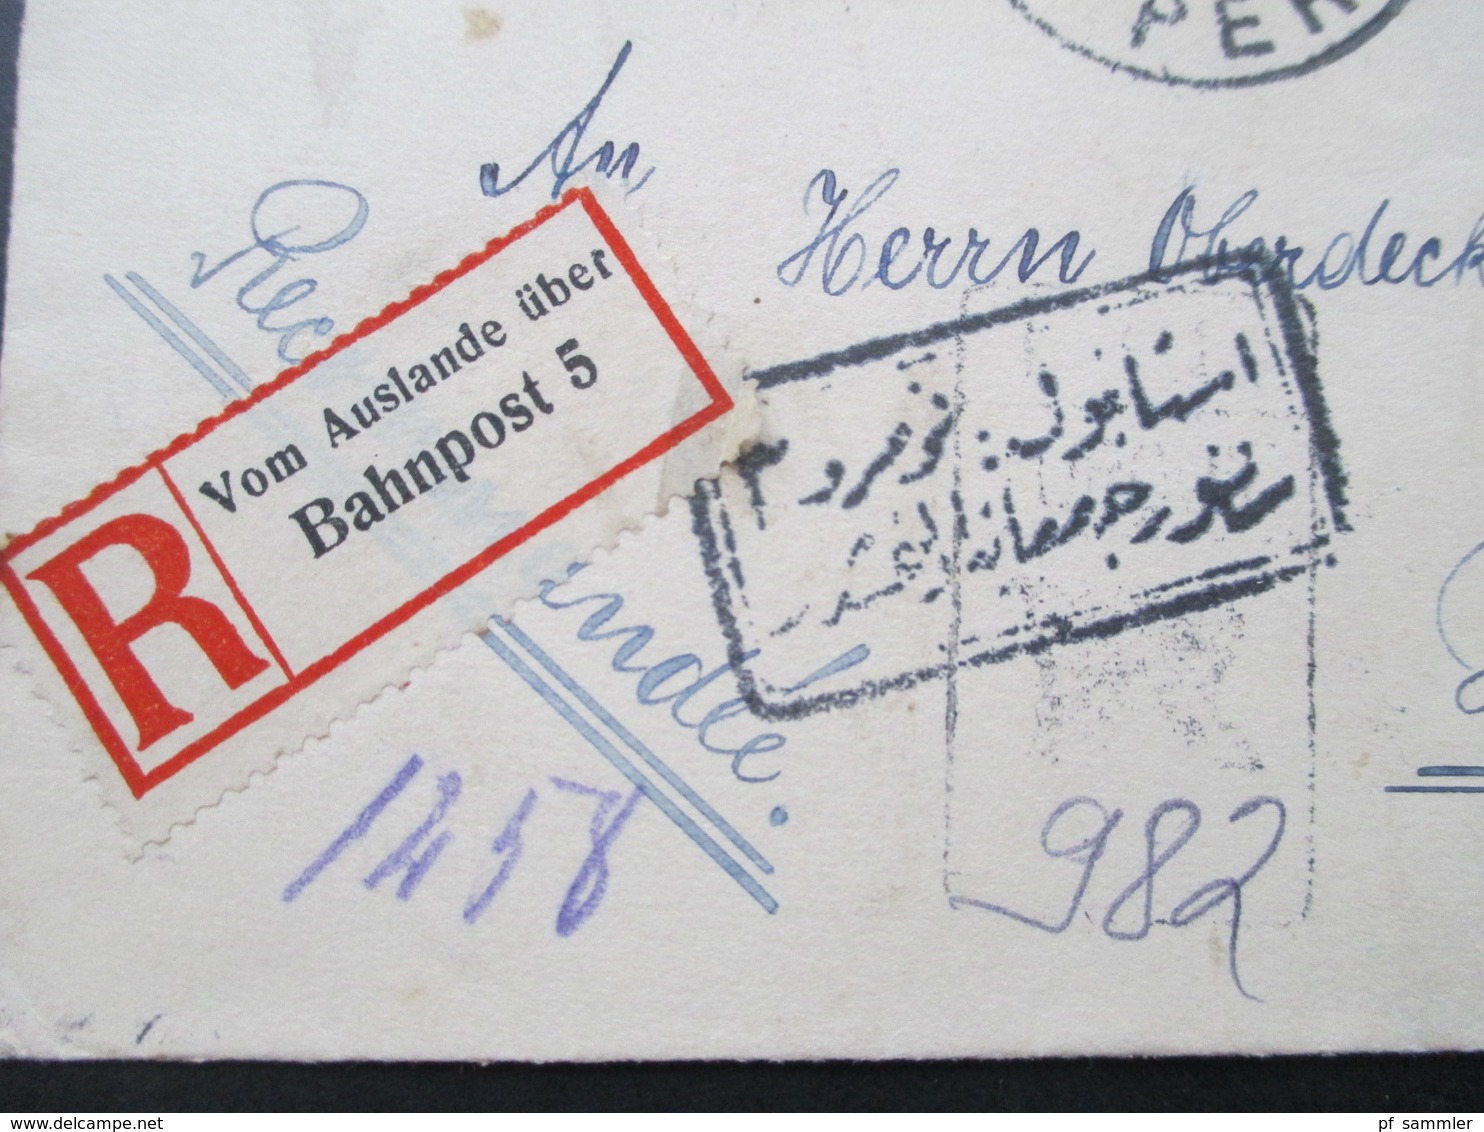 Türkei 1916 Einschreiben Zettel Vom Auslande über Bahnpost 5 nach Harburg Marine Kohlenlager Oberdeckoffizier